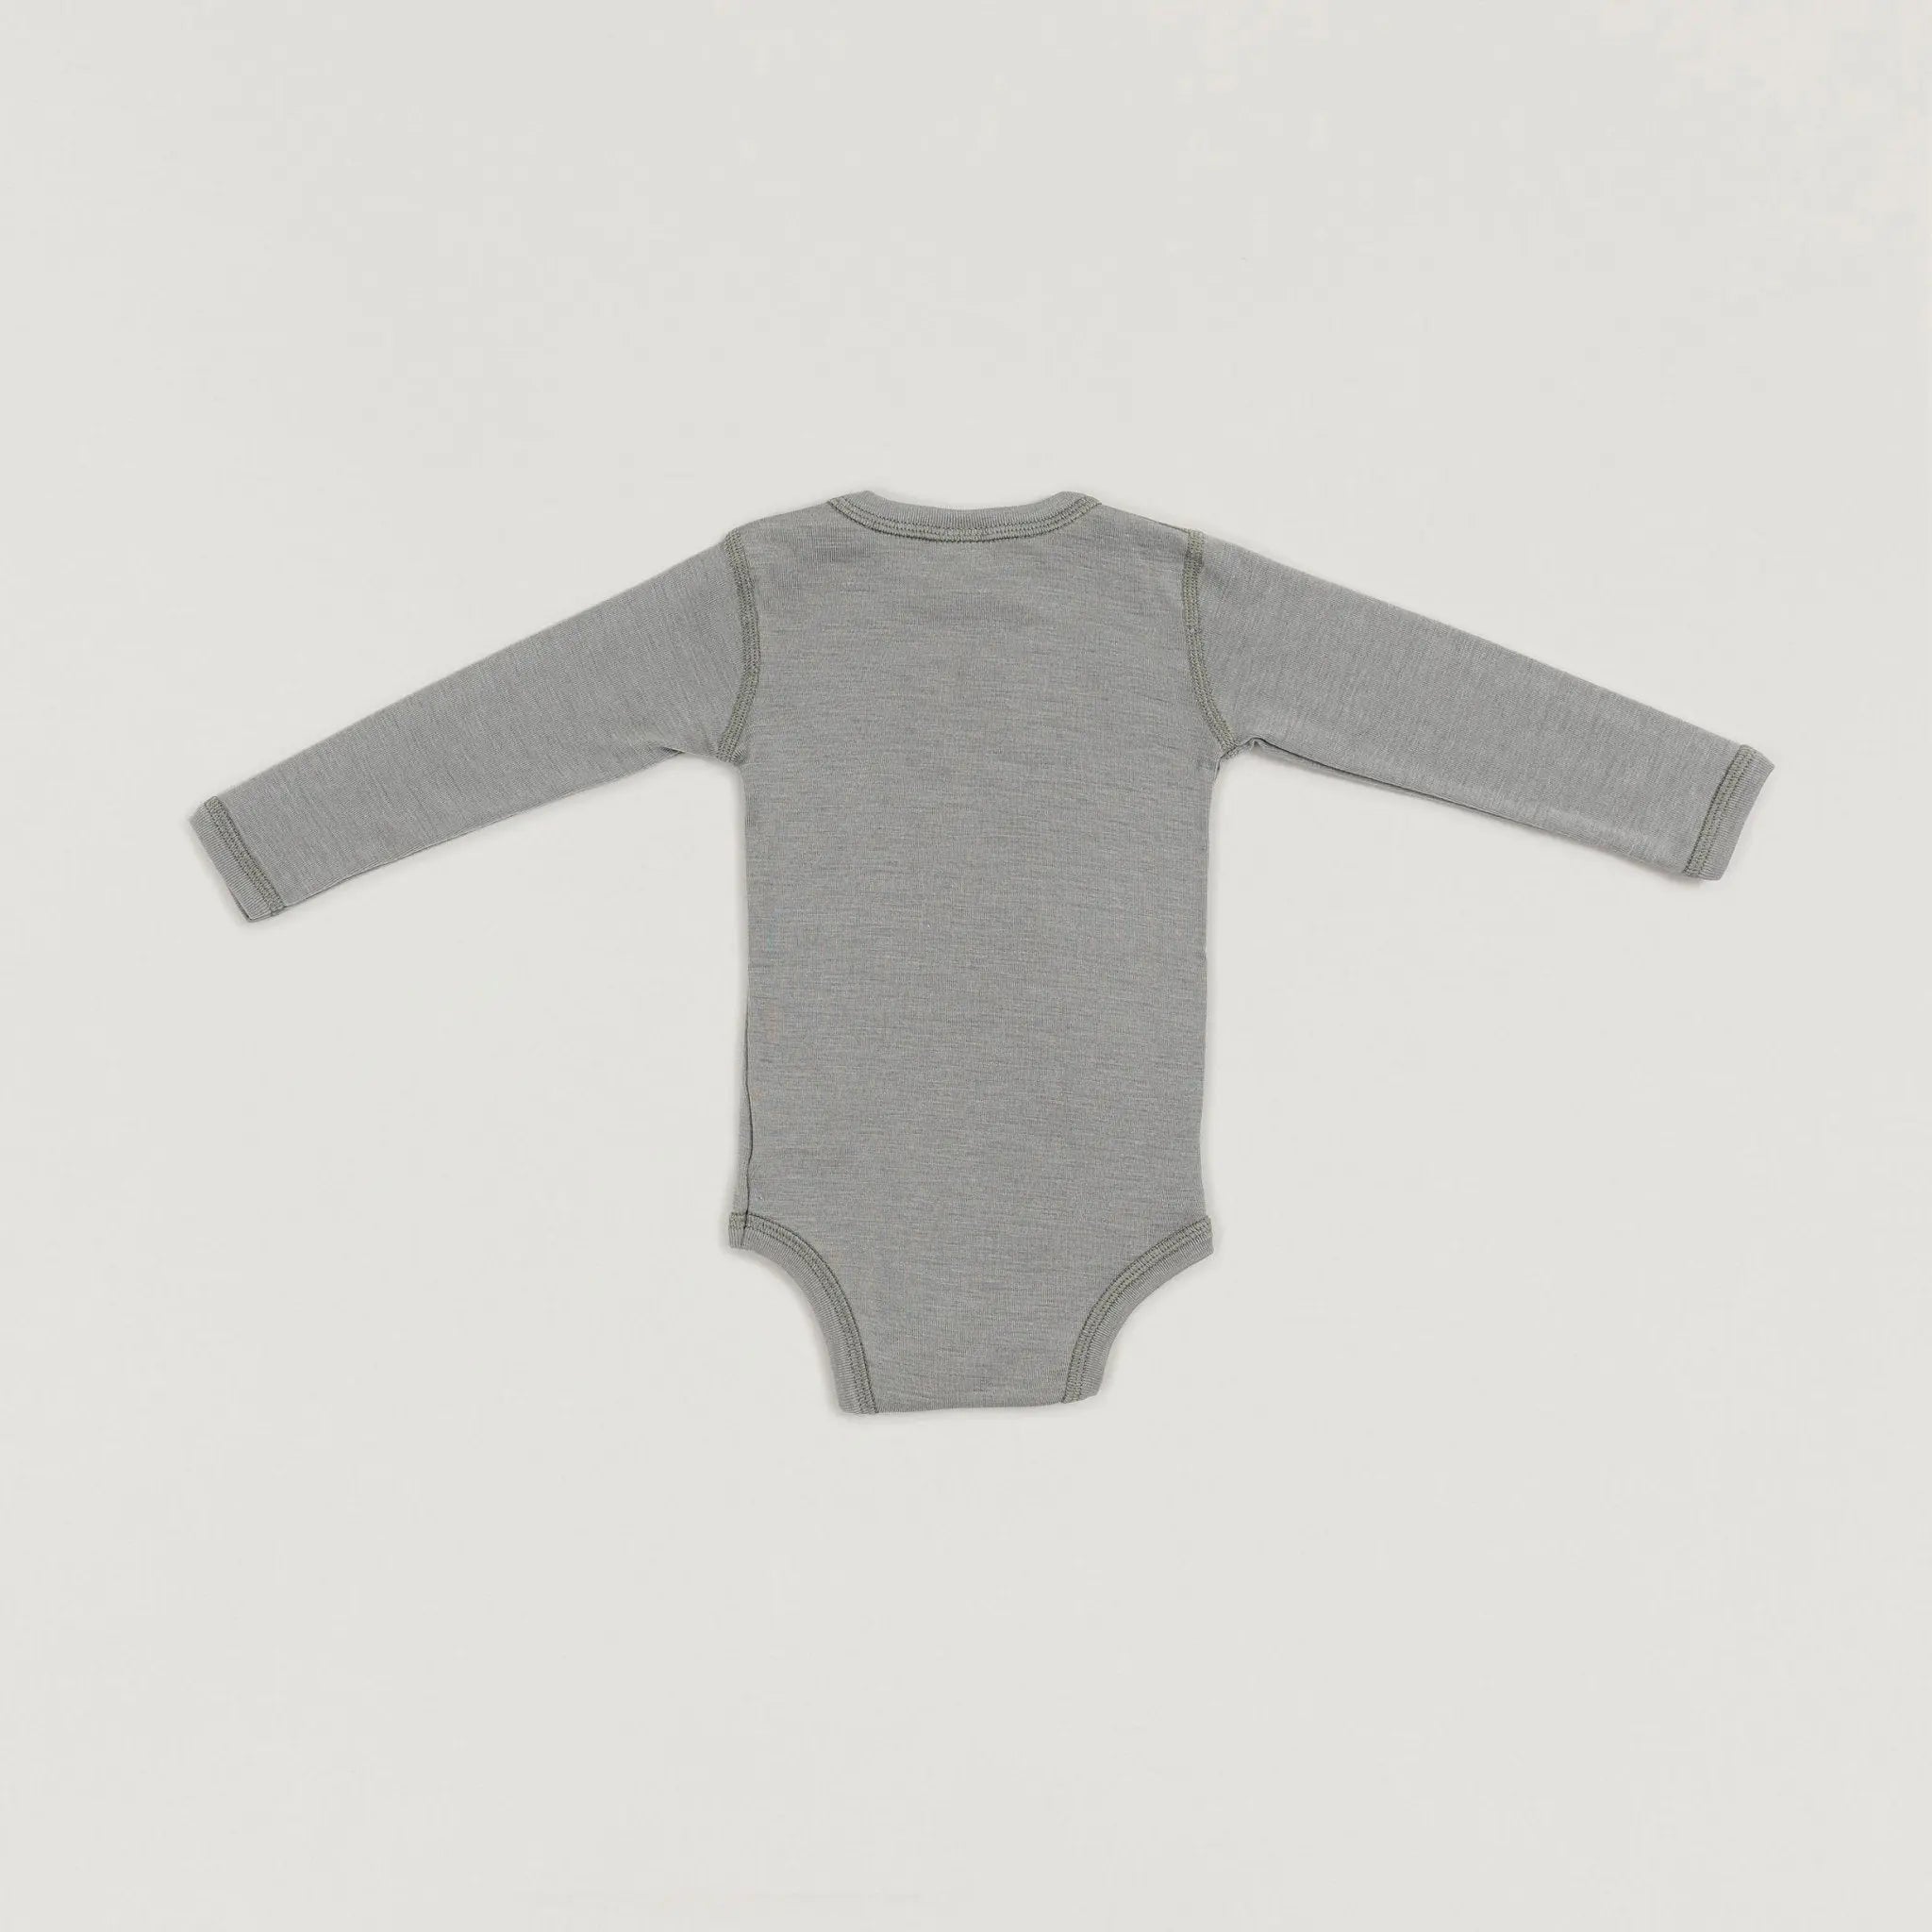 Ein Produktbild des Langarmwickelbodys aus Wolle und Seide in Forest der Babybox Collection in der Rückansicht im Onlineshop von Babybox and Family